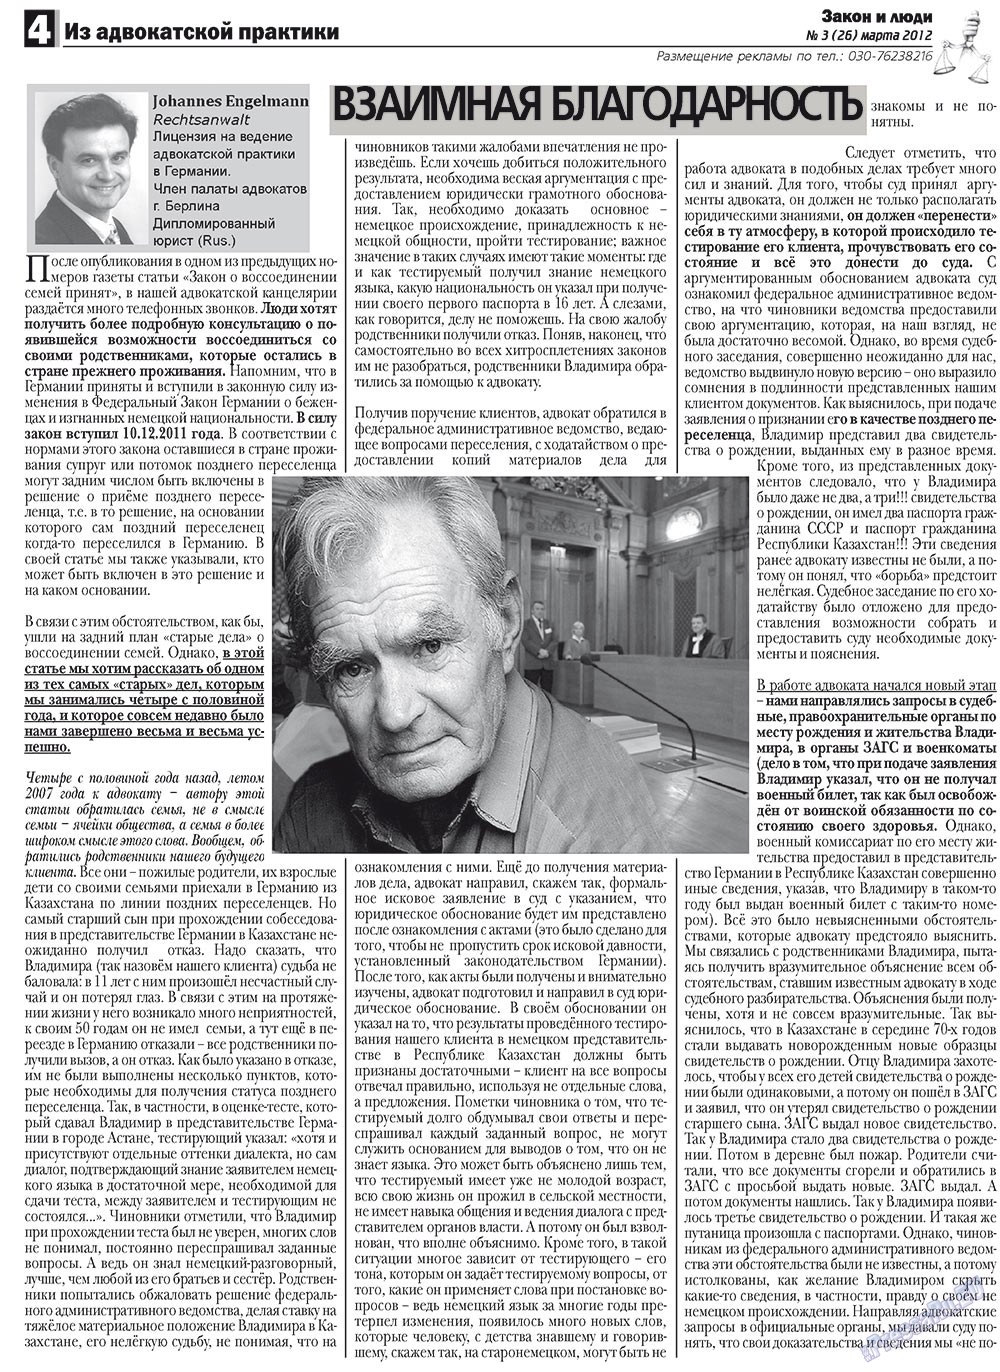 Закон и люди, газета. 2012 №3 стр.4